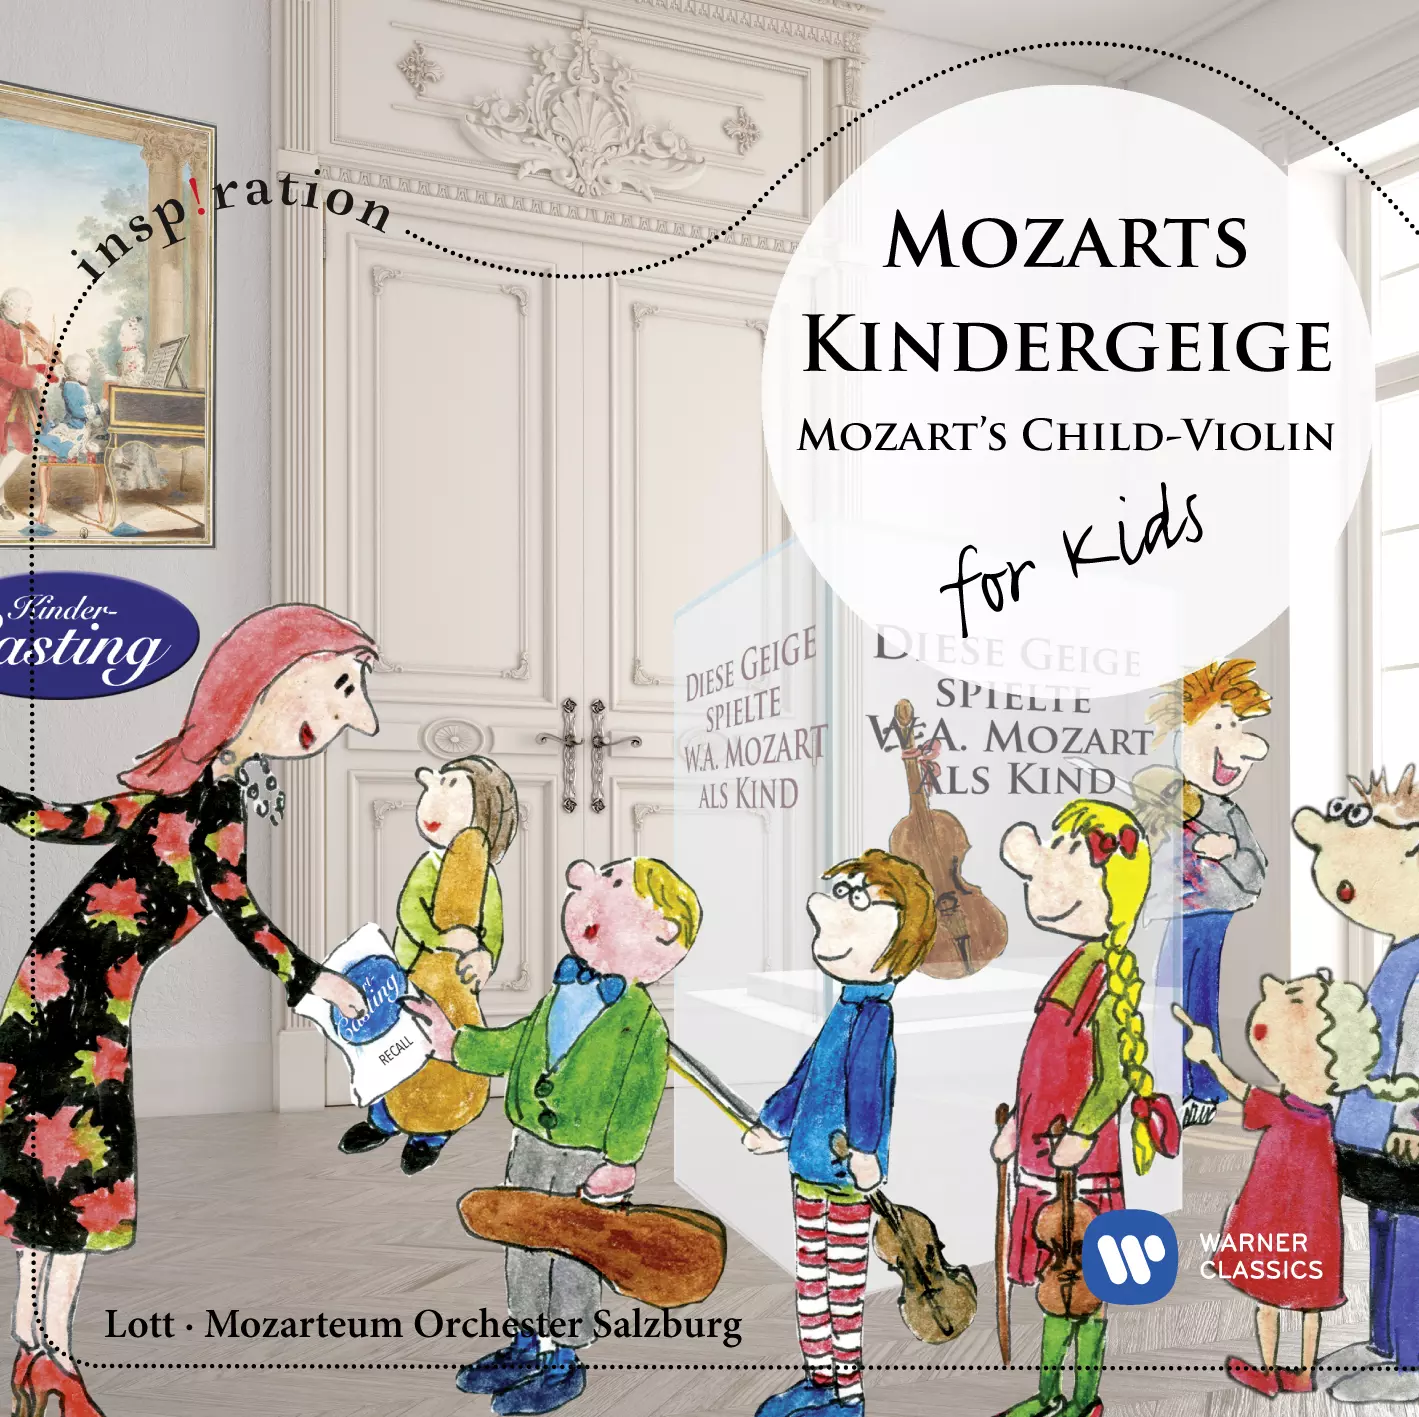 Mozarts Kindergeige - for Kids (Inspiration)